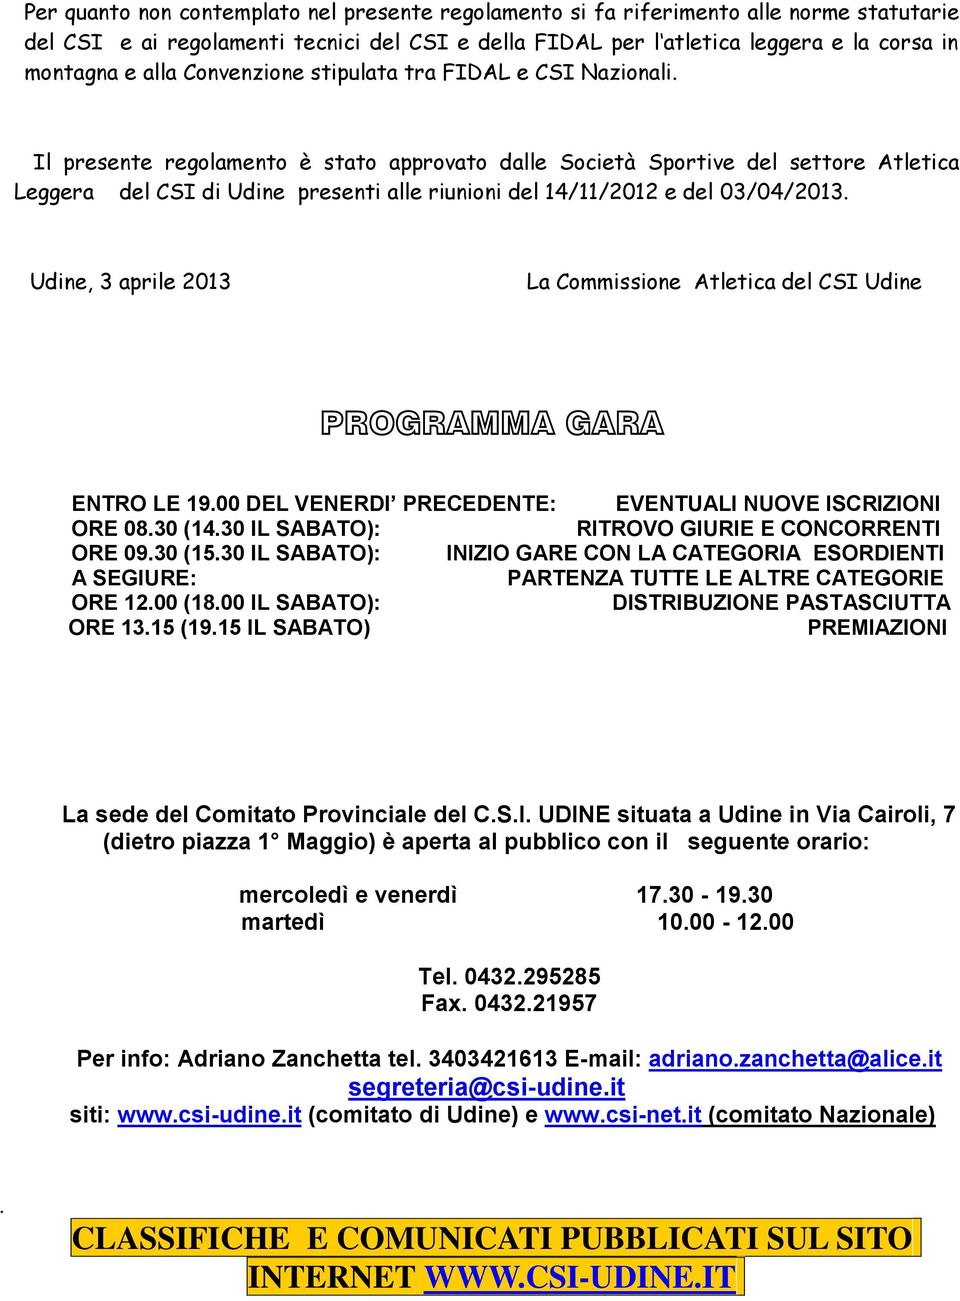 Il presente regolamento è stato approvato dalle Società Sportive del settore Atletica Leggera del CSI di Udine presenti alle riunioni del 14/11/2012 e del 03/04/2013.